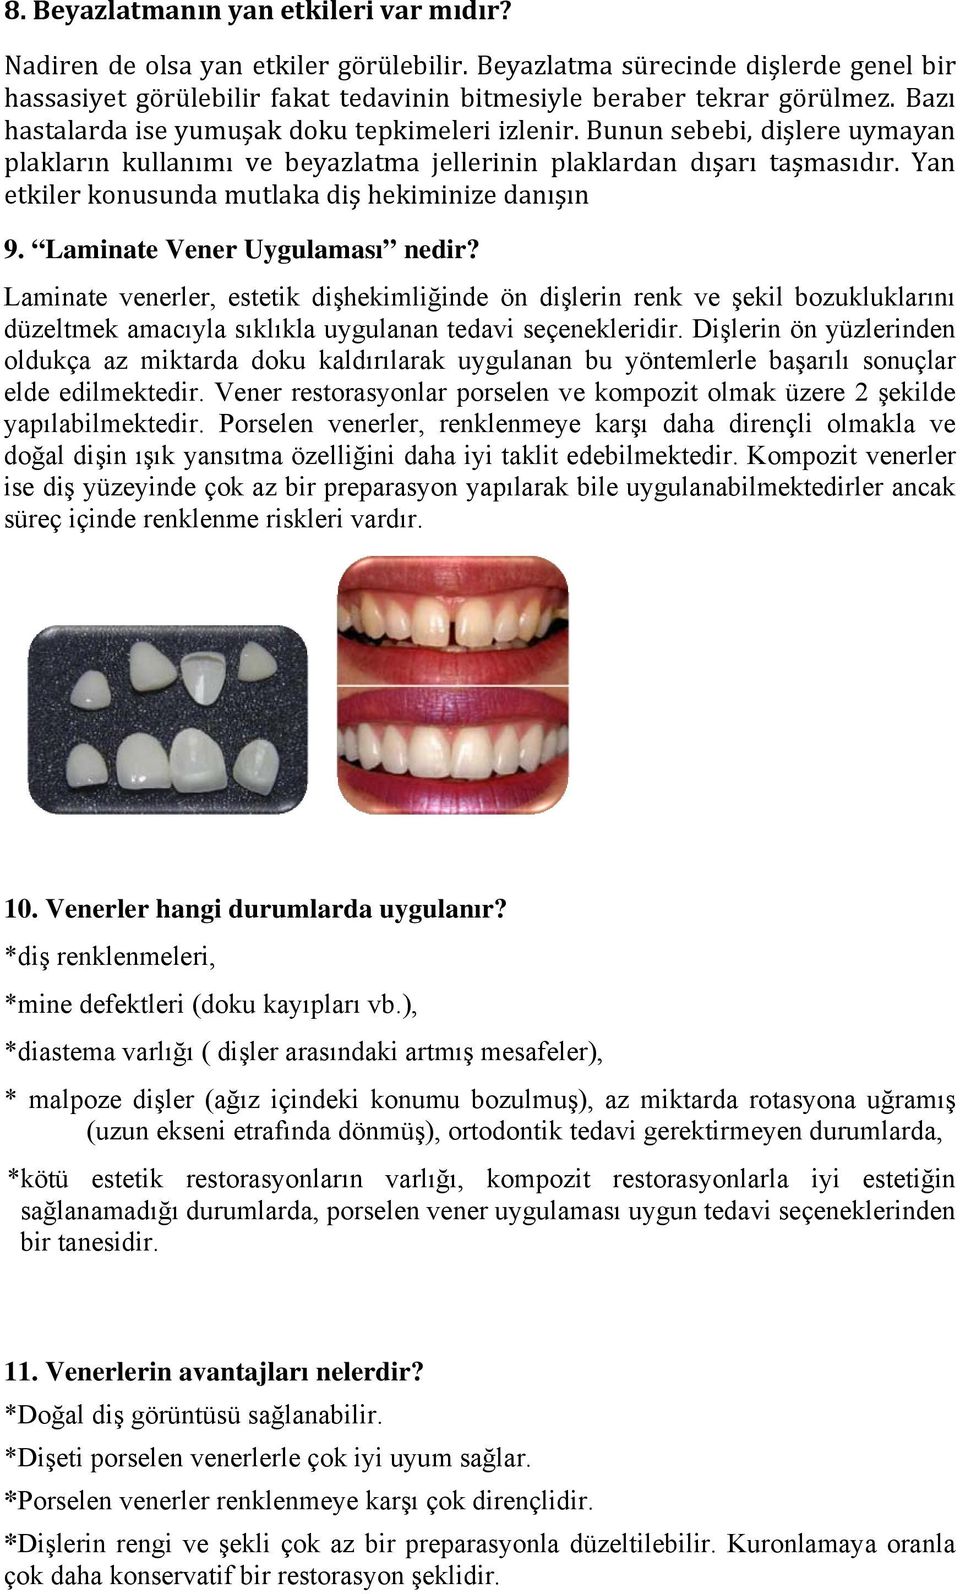 Yan etkiler konusunda mutlaka diş hekiminize danışın 9. Laminate Vener Uygulaması nedir?